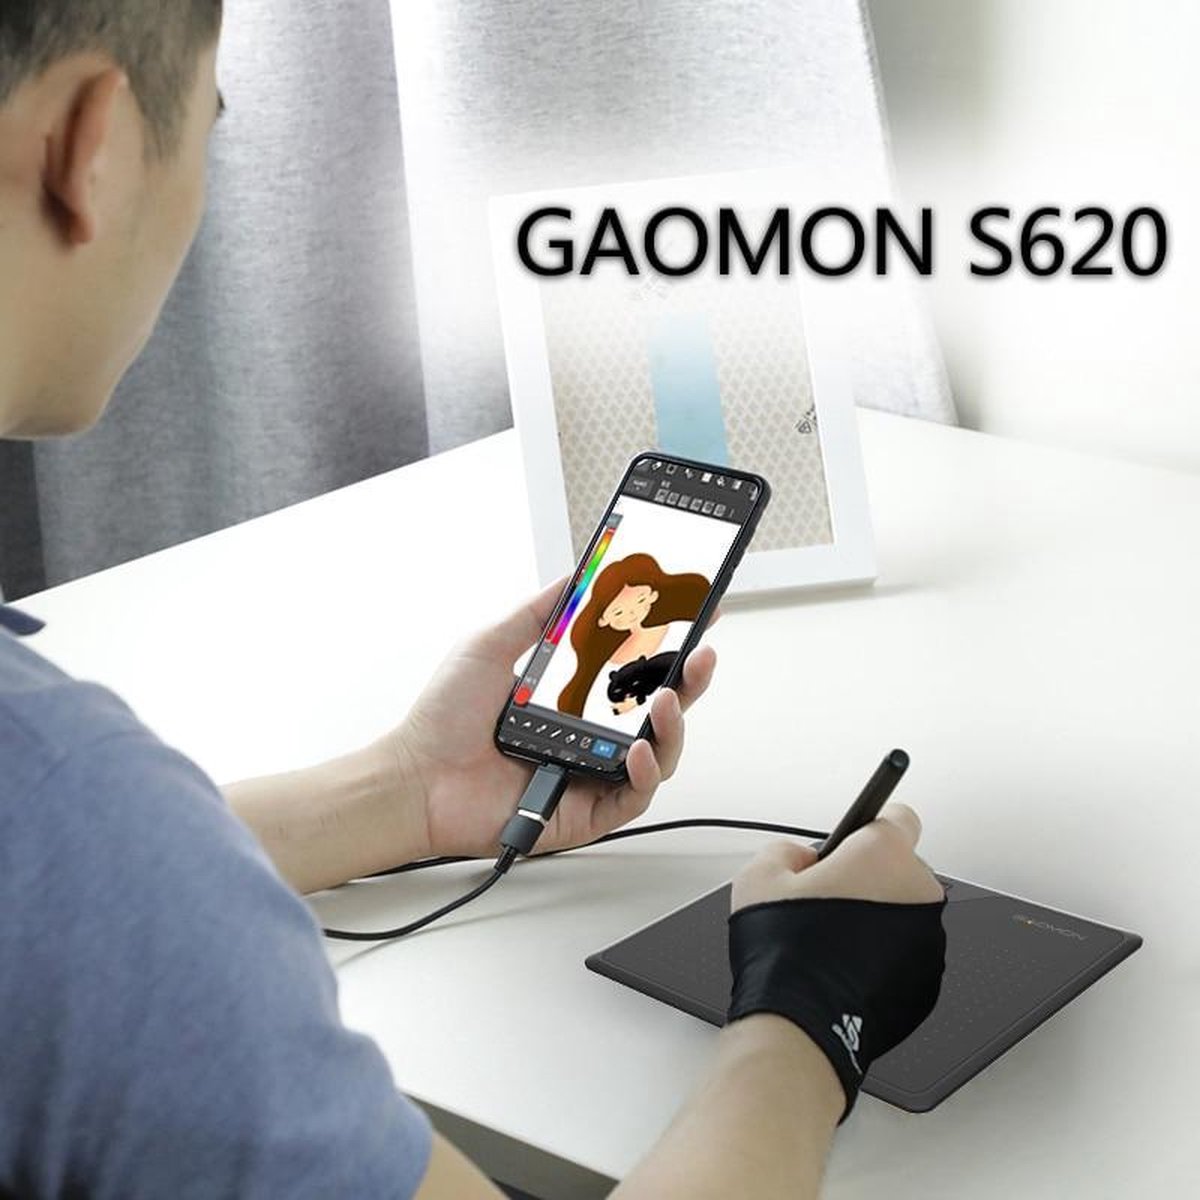 GAOMON S620 6.5 x 4 inch 8192 Niveau Batterijloze Penondersteuning Android Windows Mac Digitale grafische Tablet Voor Tekenen en Spel OSU